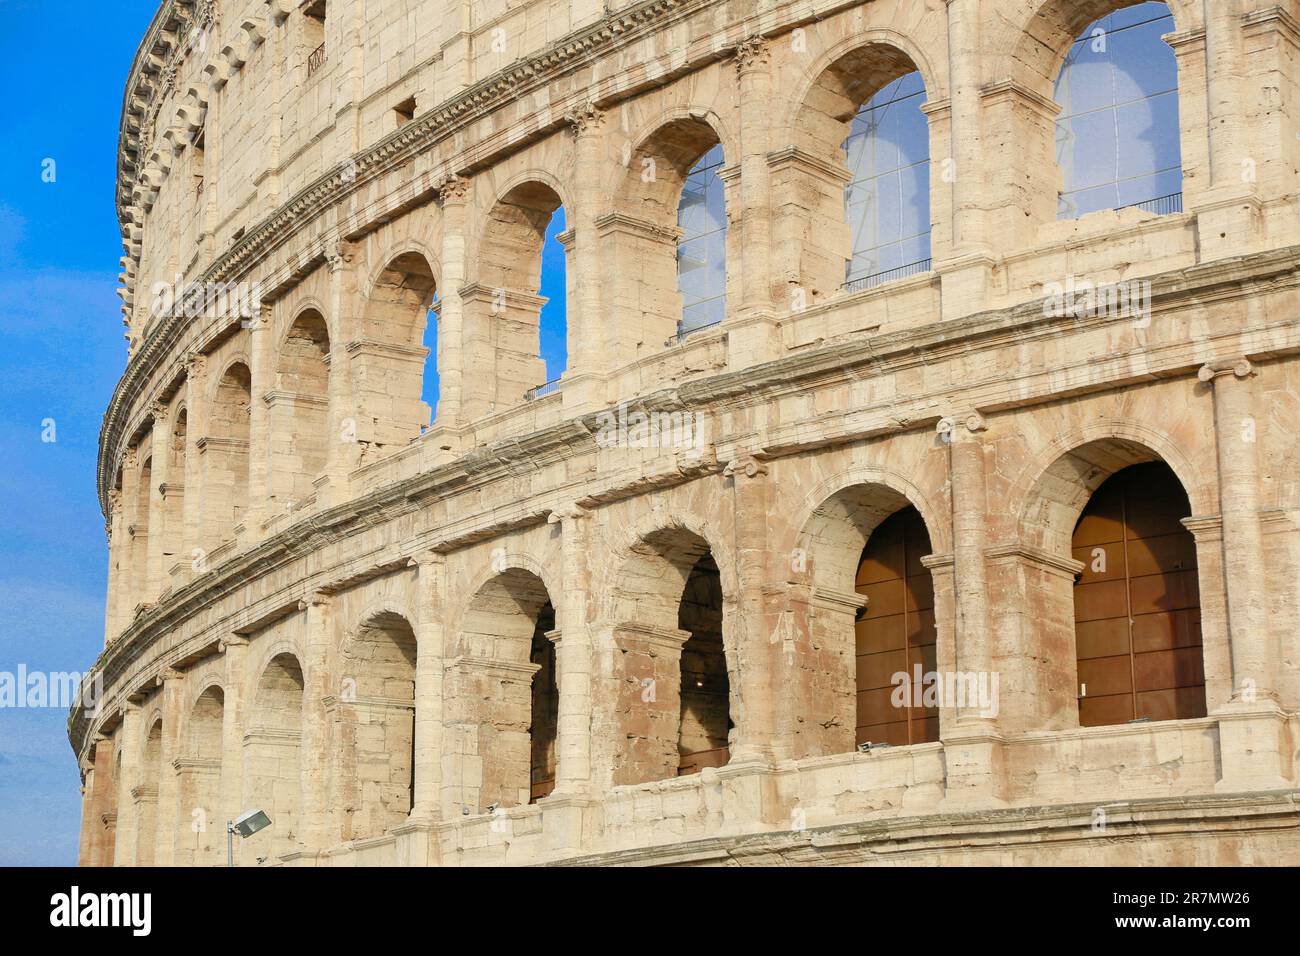 Le Colisée et Arc de Constantine de via dei Fori Imperiali, dans le centre-ville de Rome, Italie Banque D'Images